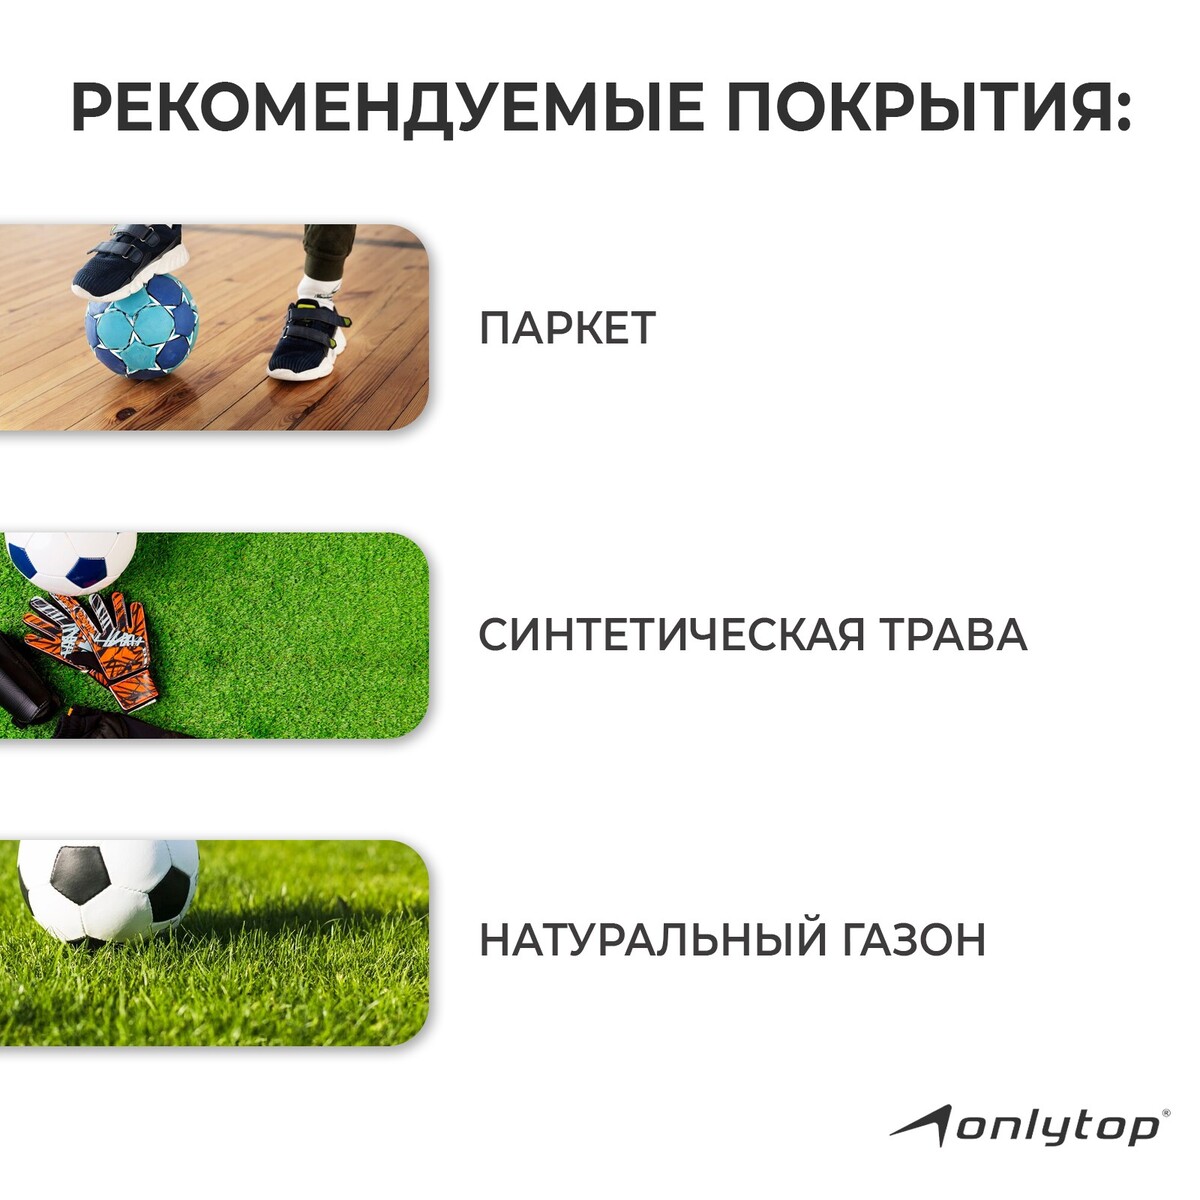 фото Мяч футбольный onlytop, pvc, машинная сшивка, 32 панели, р. 5